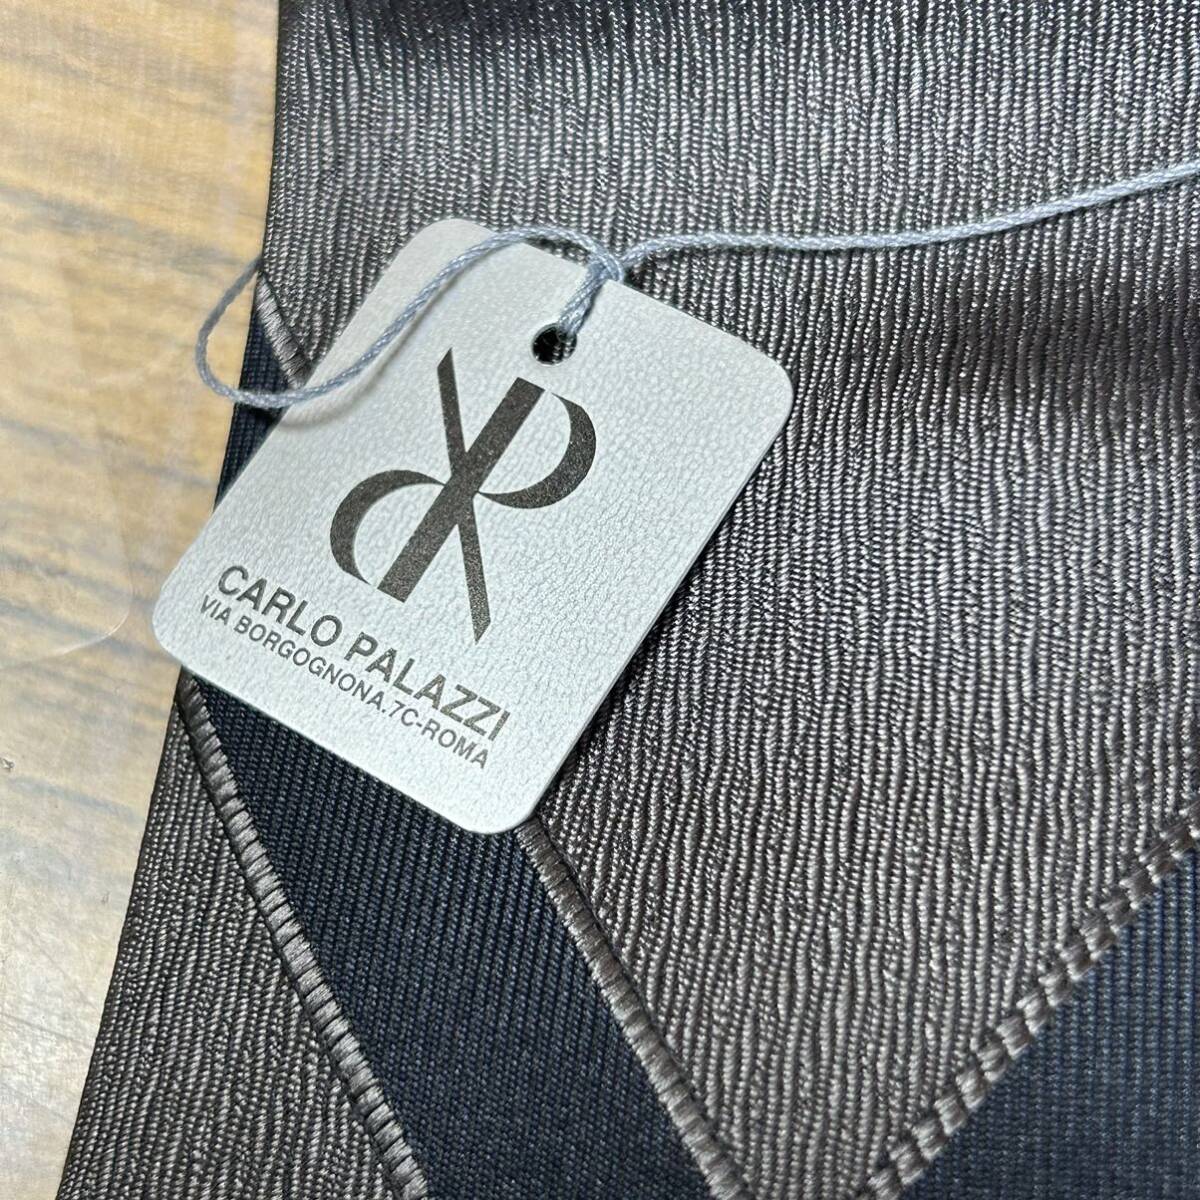 新品 未使用 Castelbajac CARLO PALAZZI ワイシャツ ネクタイ セット サイズ 2L ビジネス ファッション スーツ オフィス _画像5